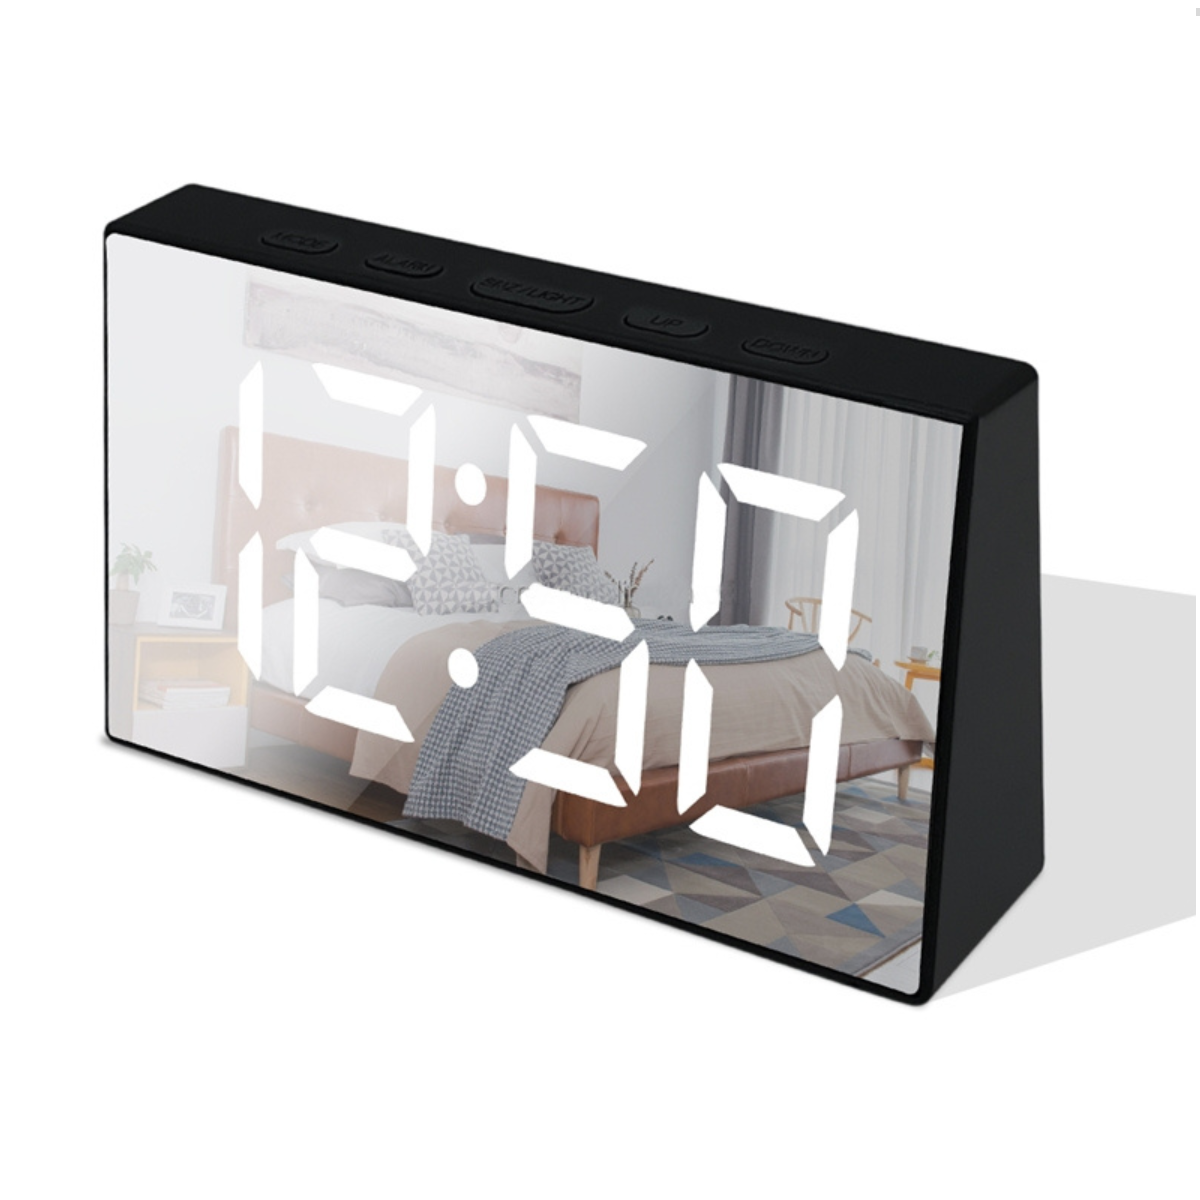 Relógio Led Digital de Mesa com Espelho - 1